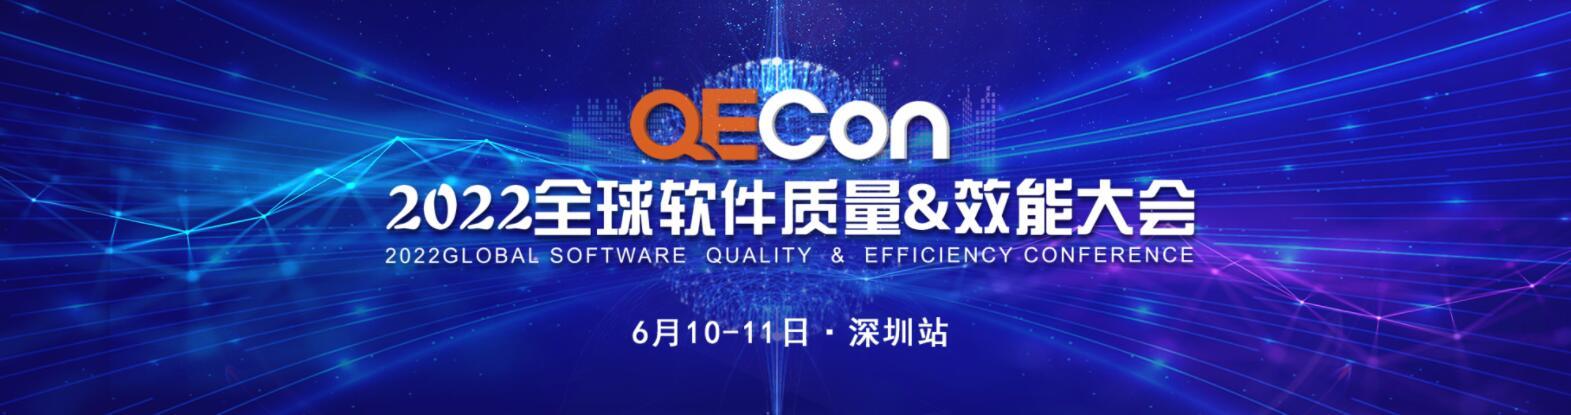 QECon全球软件质量&效能大会-深圳站